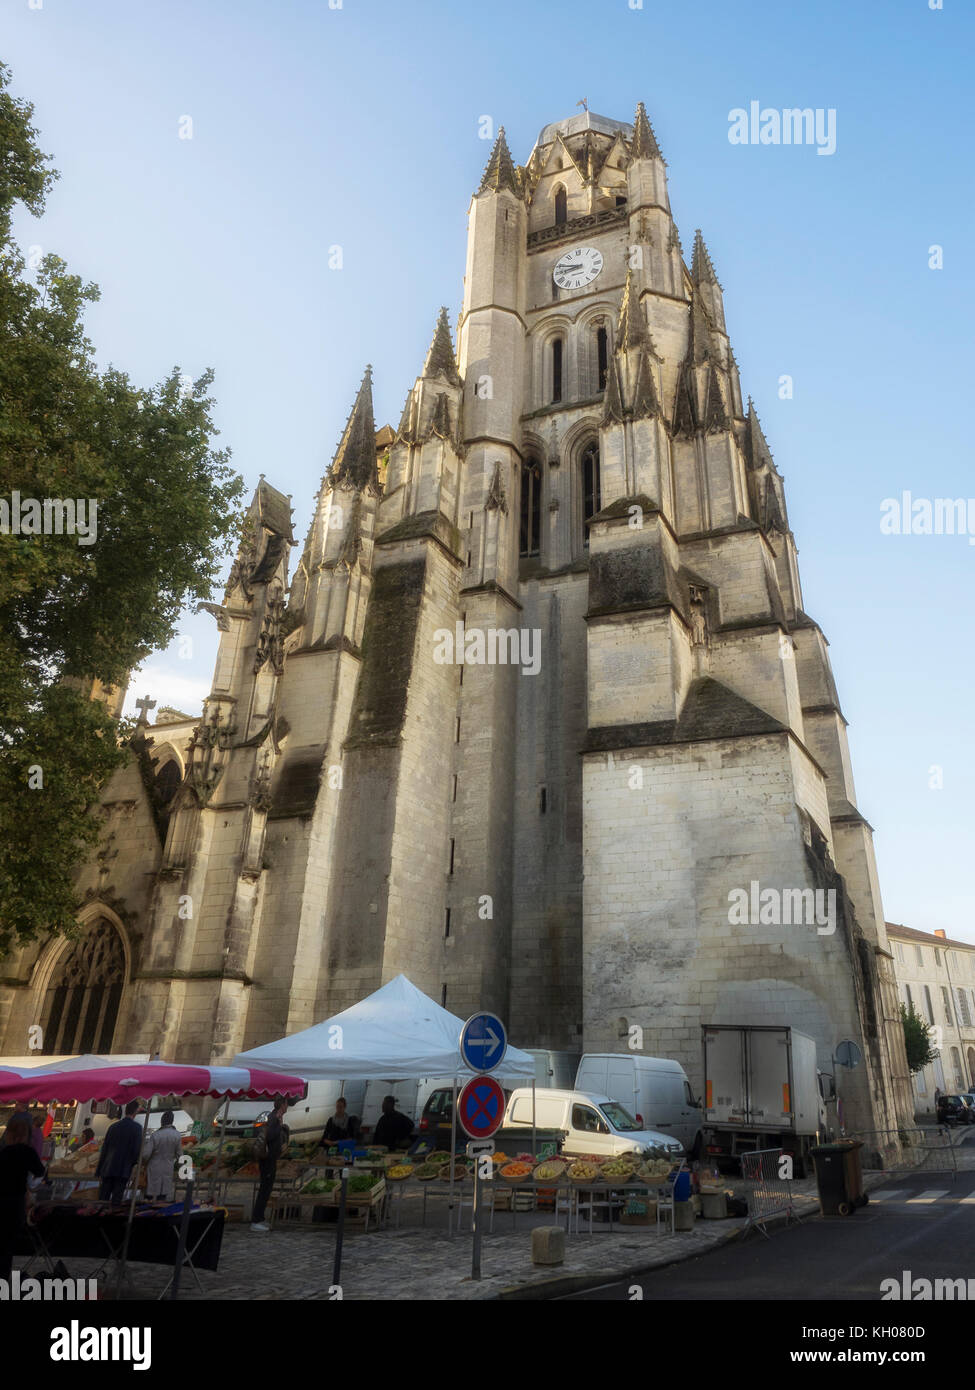 SAINTES, FRANCE : les étals du marché au pied de la cathédrale de Saintes (Cathédrale Saint-Pierre) Banque D'Images